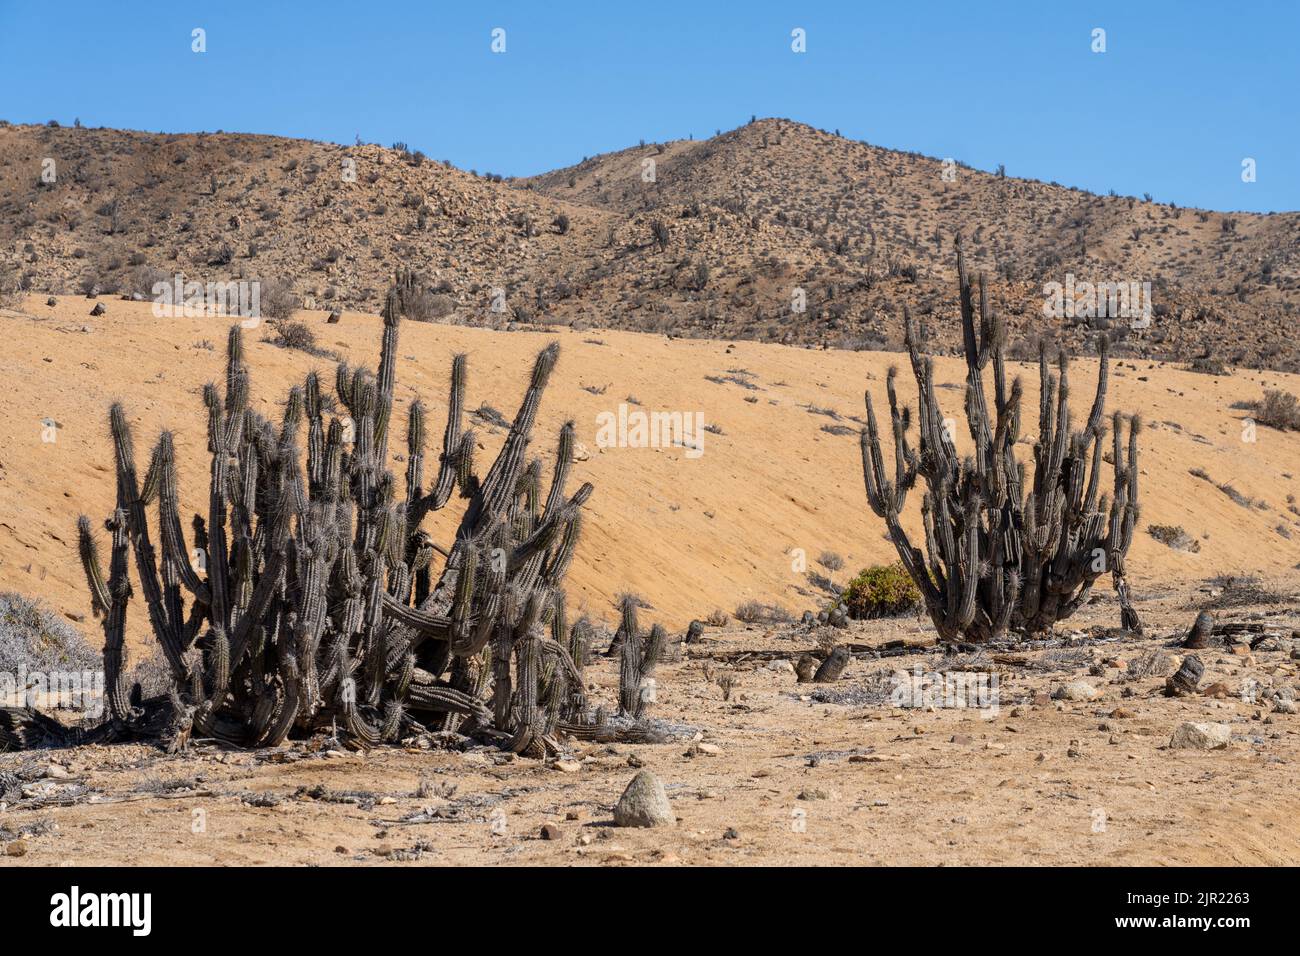 Eulychnia iquiquensis candelabra cacti in Pan de Azucar National Park in the Atacama Desert of Chile. Stock Photo